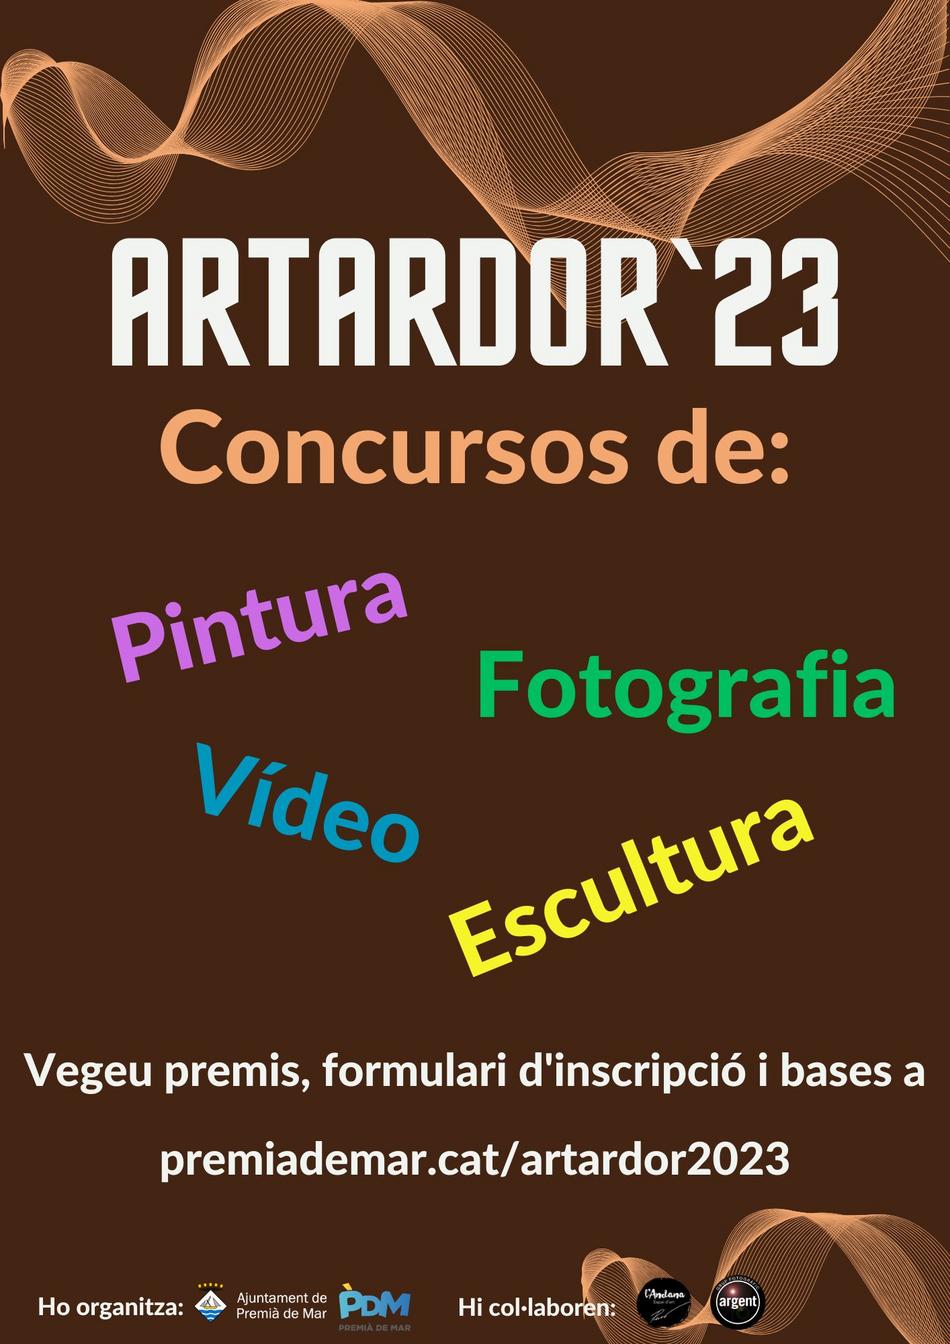 ArTardor 2023